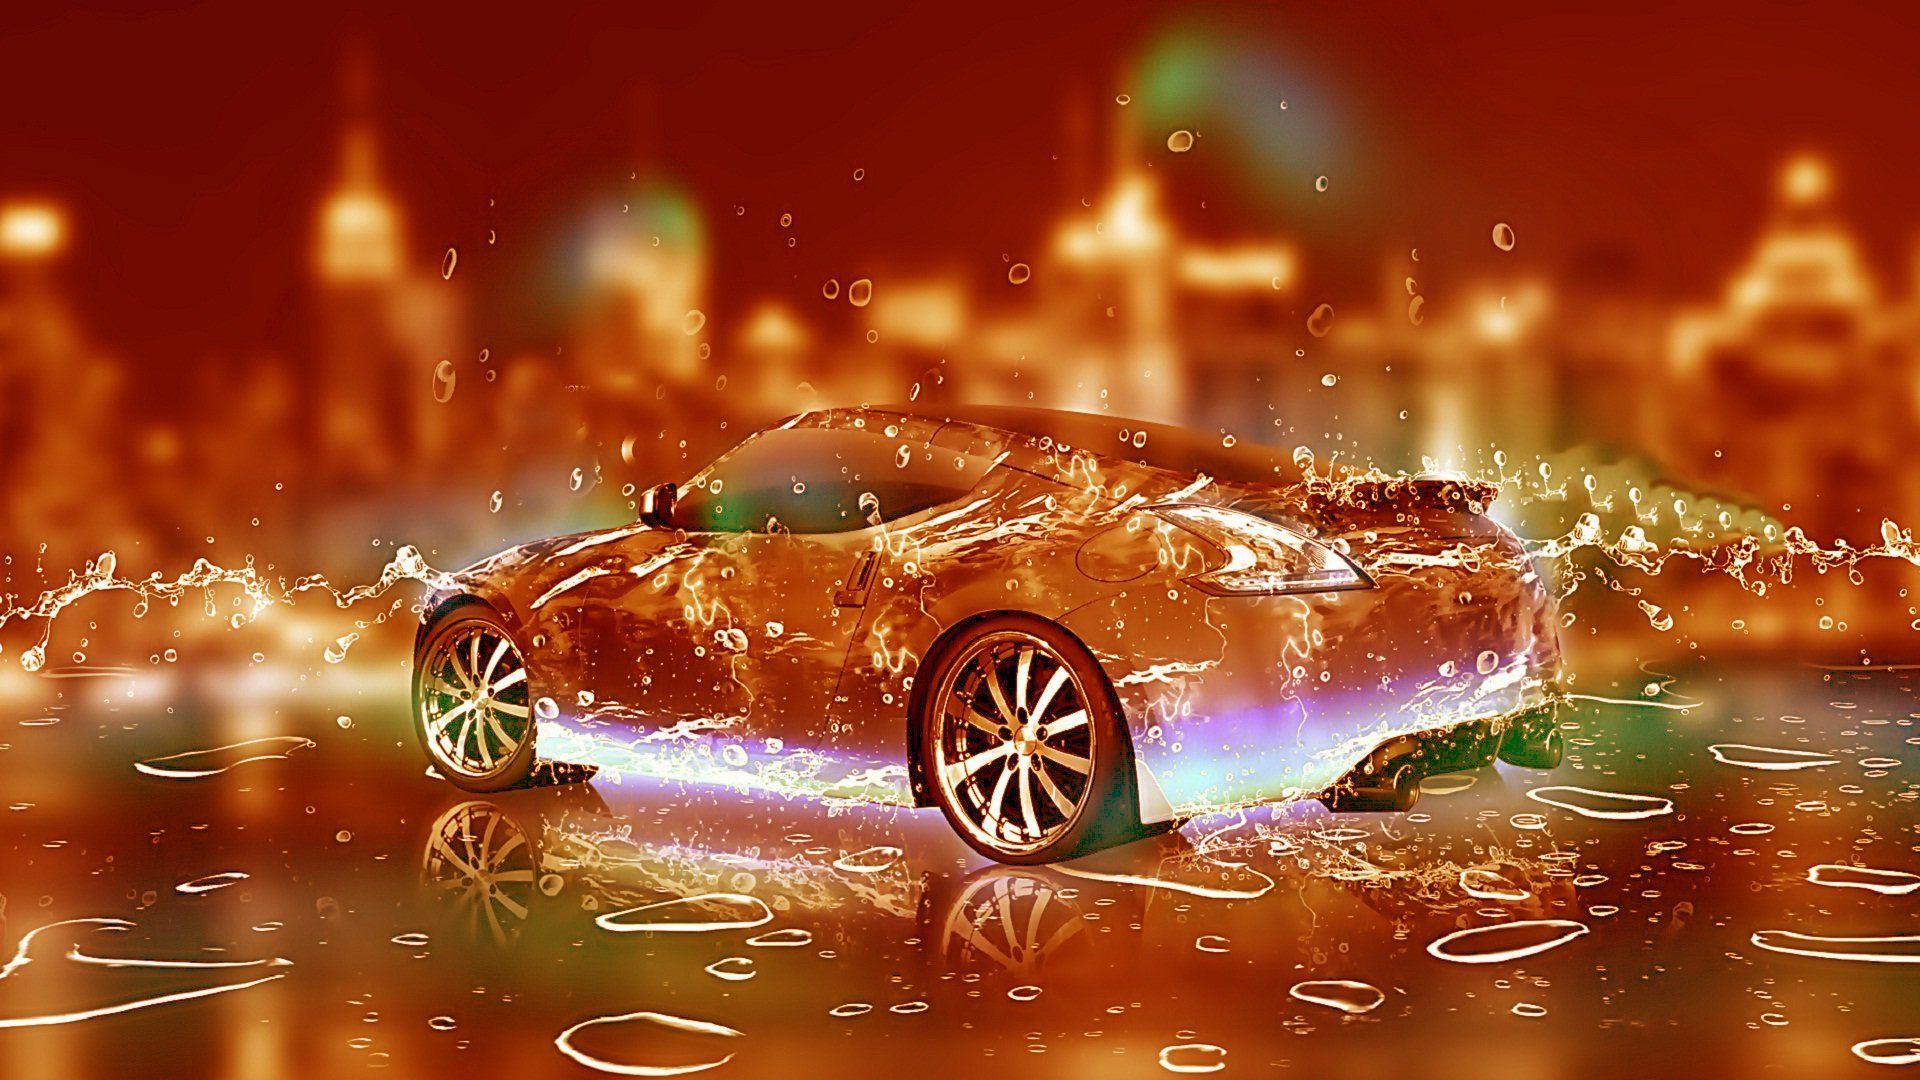 Best 3D HD Car Wallpapers - Top Những Hình Ảnh Đẹp